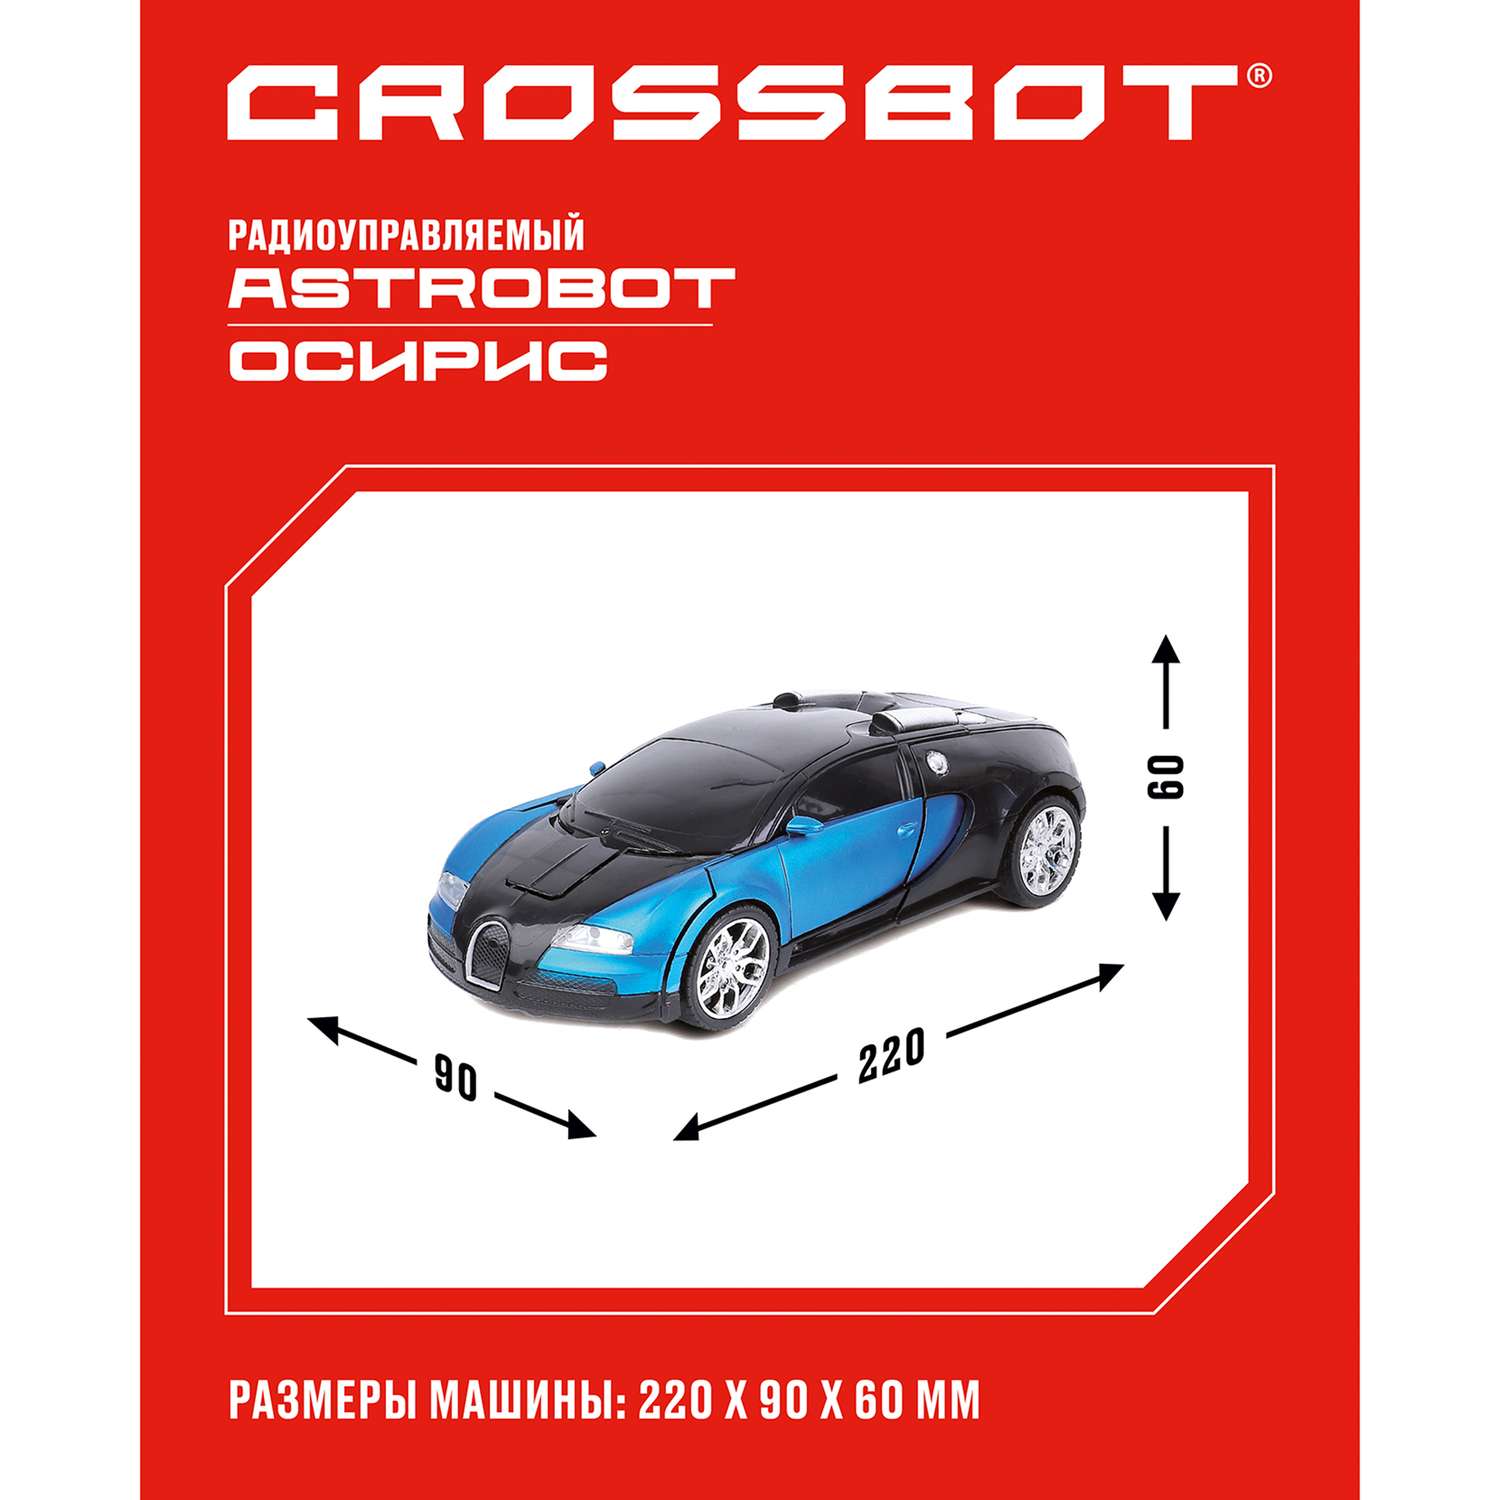 Машина-Робот CROSSBOT радиоуправляемый Astrobot Осирис. Сине-черный - фото 2